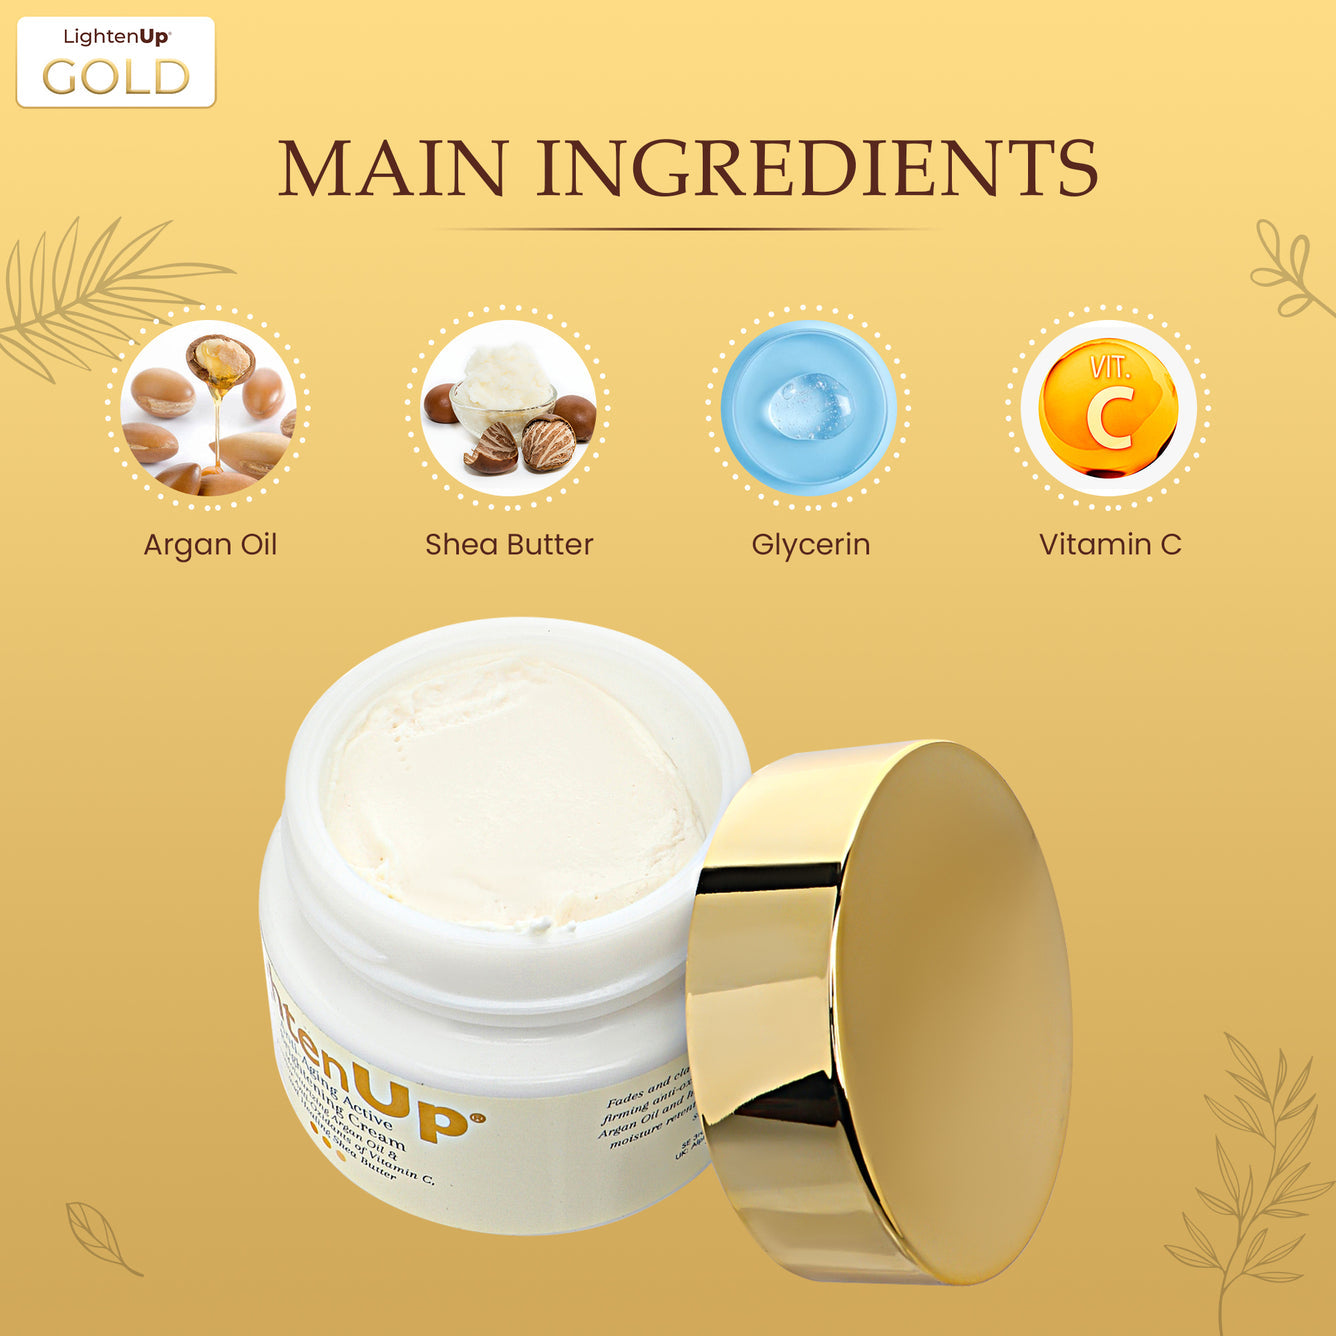 Lighten Up GOLD Anti-Aging Lihtening Cream Jar 100ml